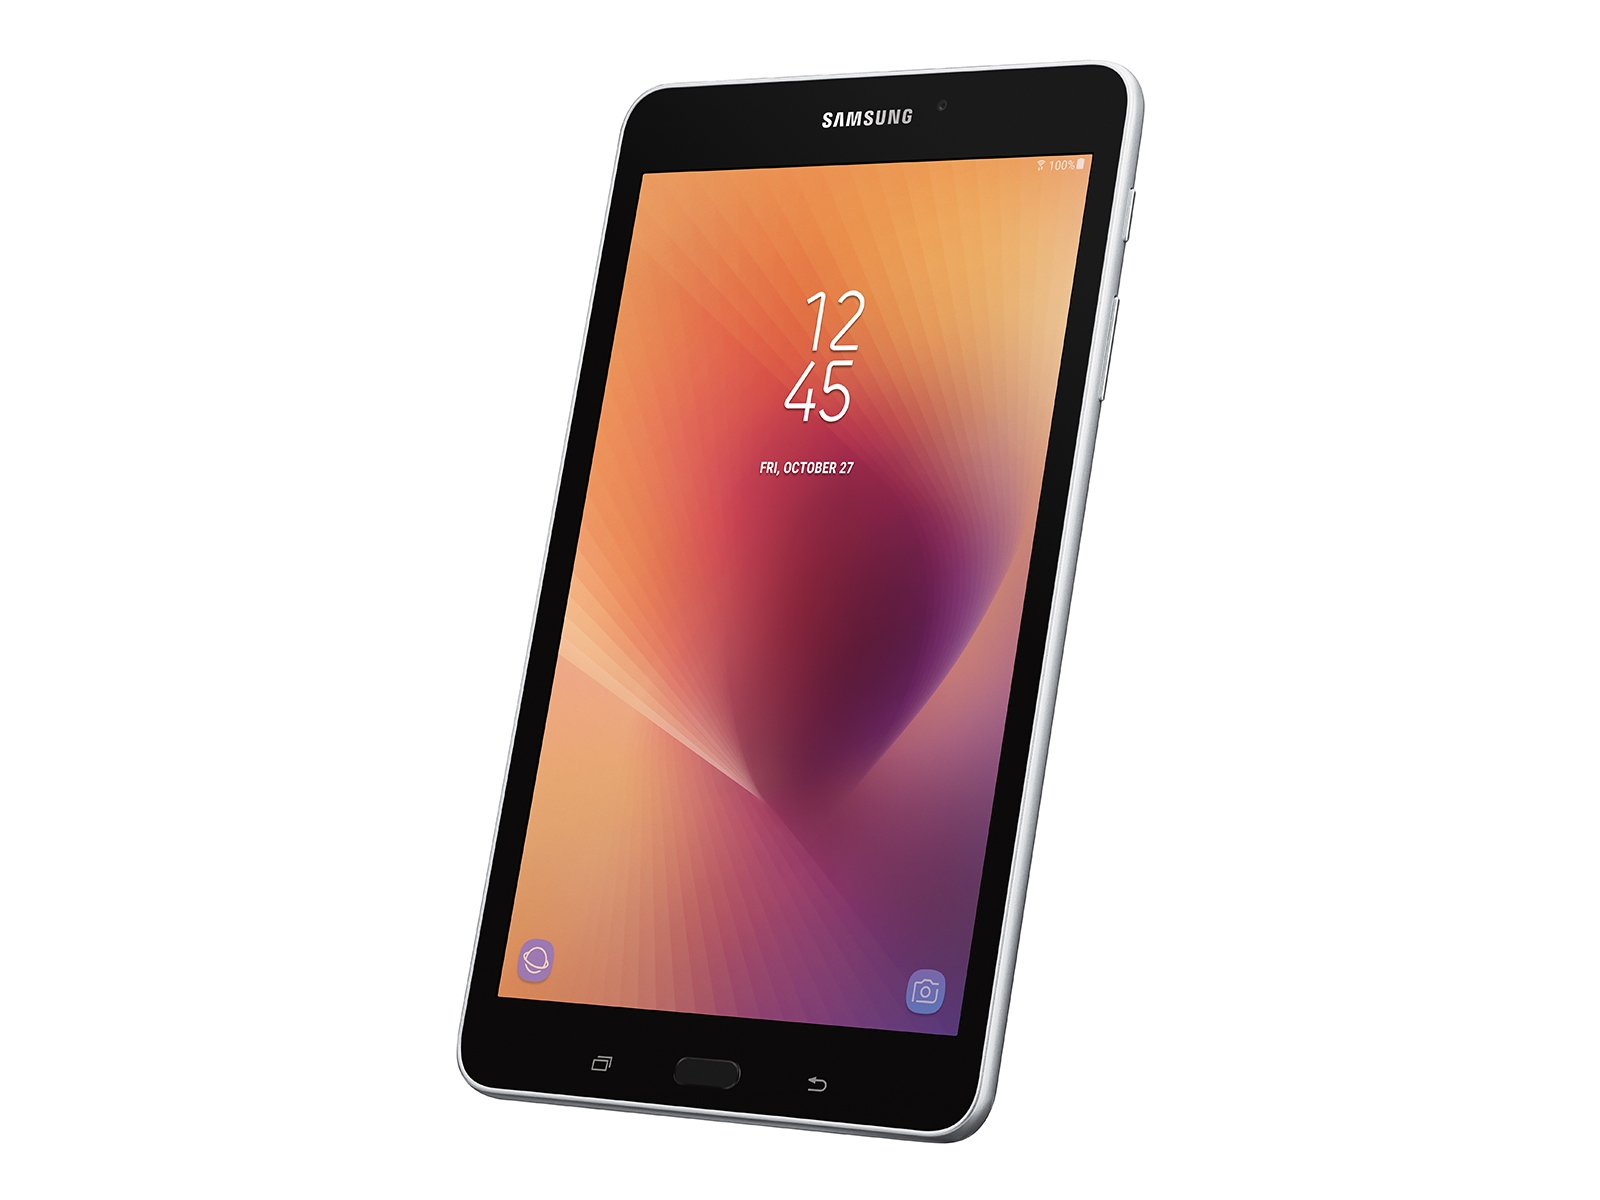 lavar Parámetros Mejorar Galaxy Tab A 8.0" (NEW) 32GB, Silver Tablets - SM-T380NZSEXAR | Samsung US